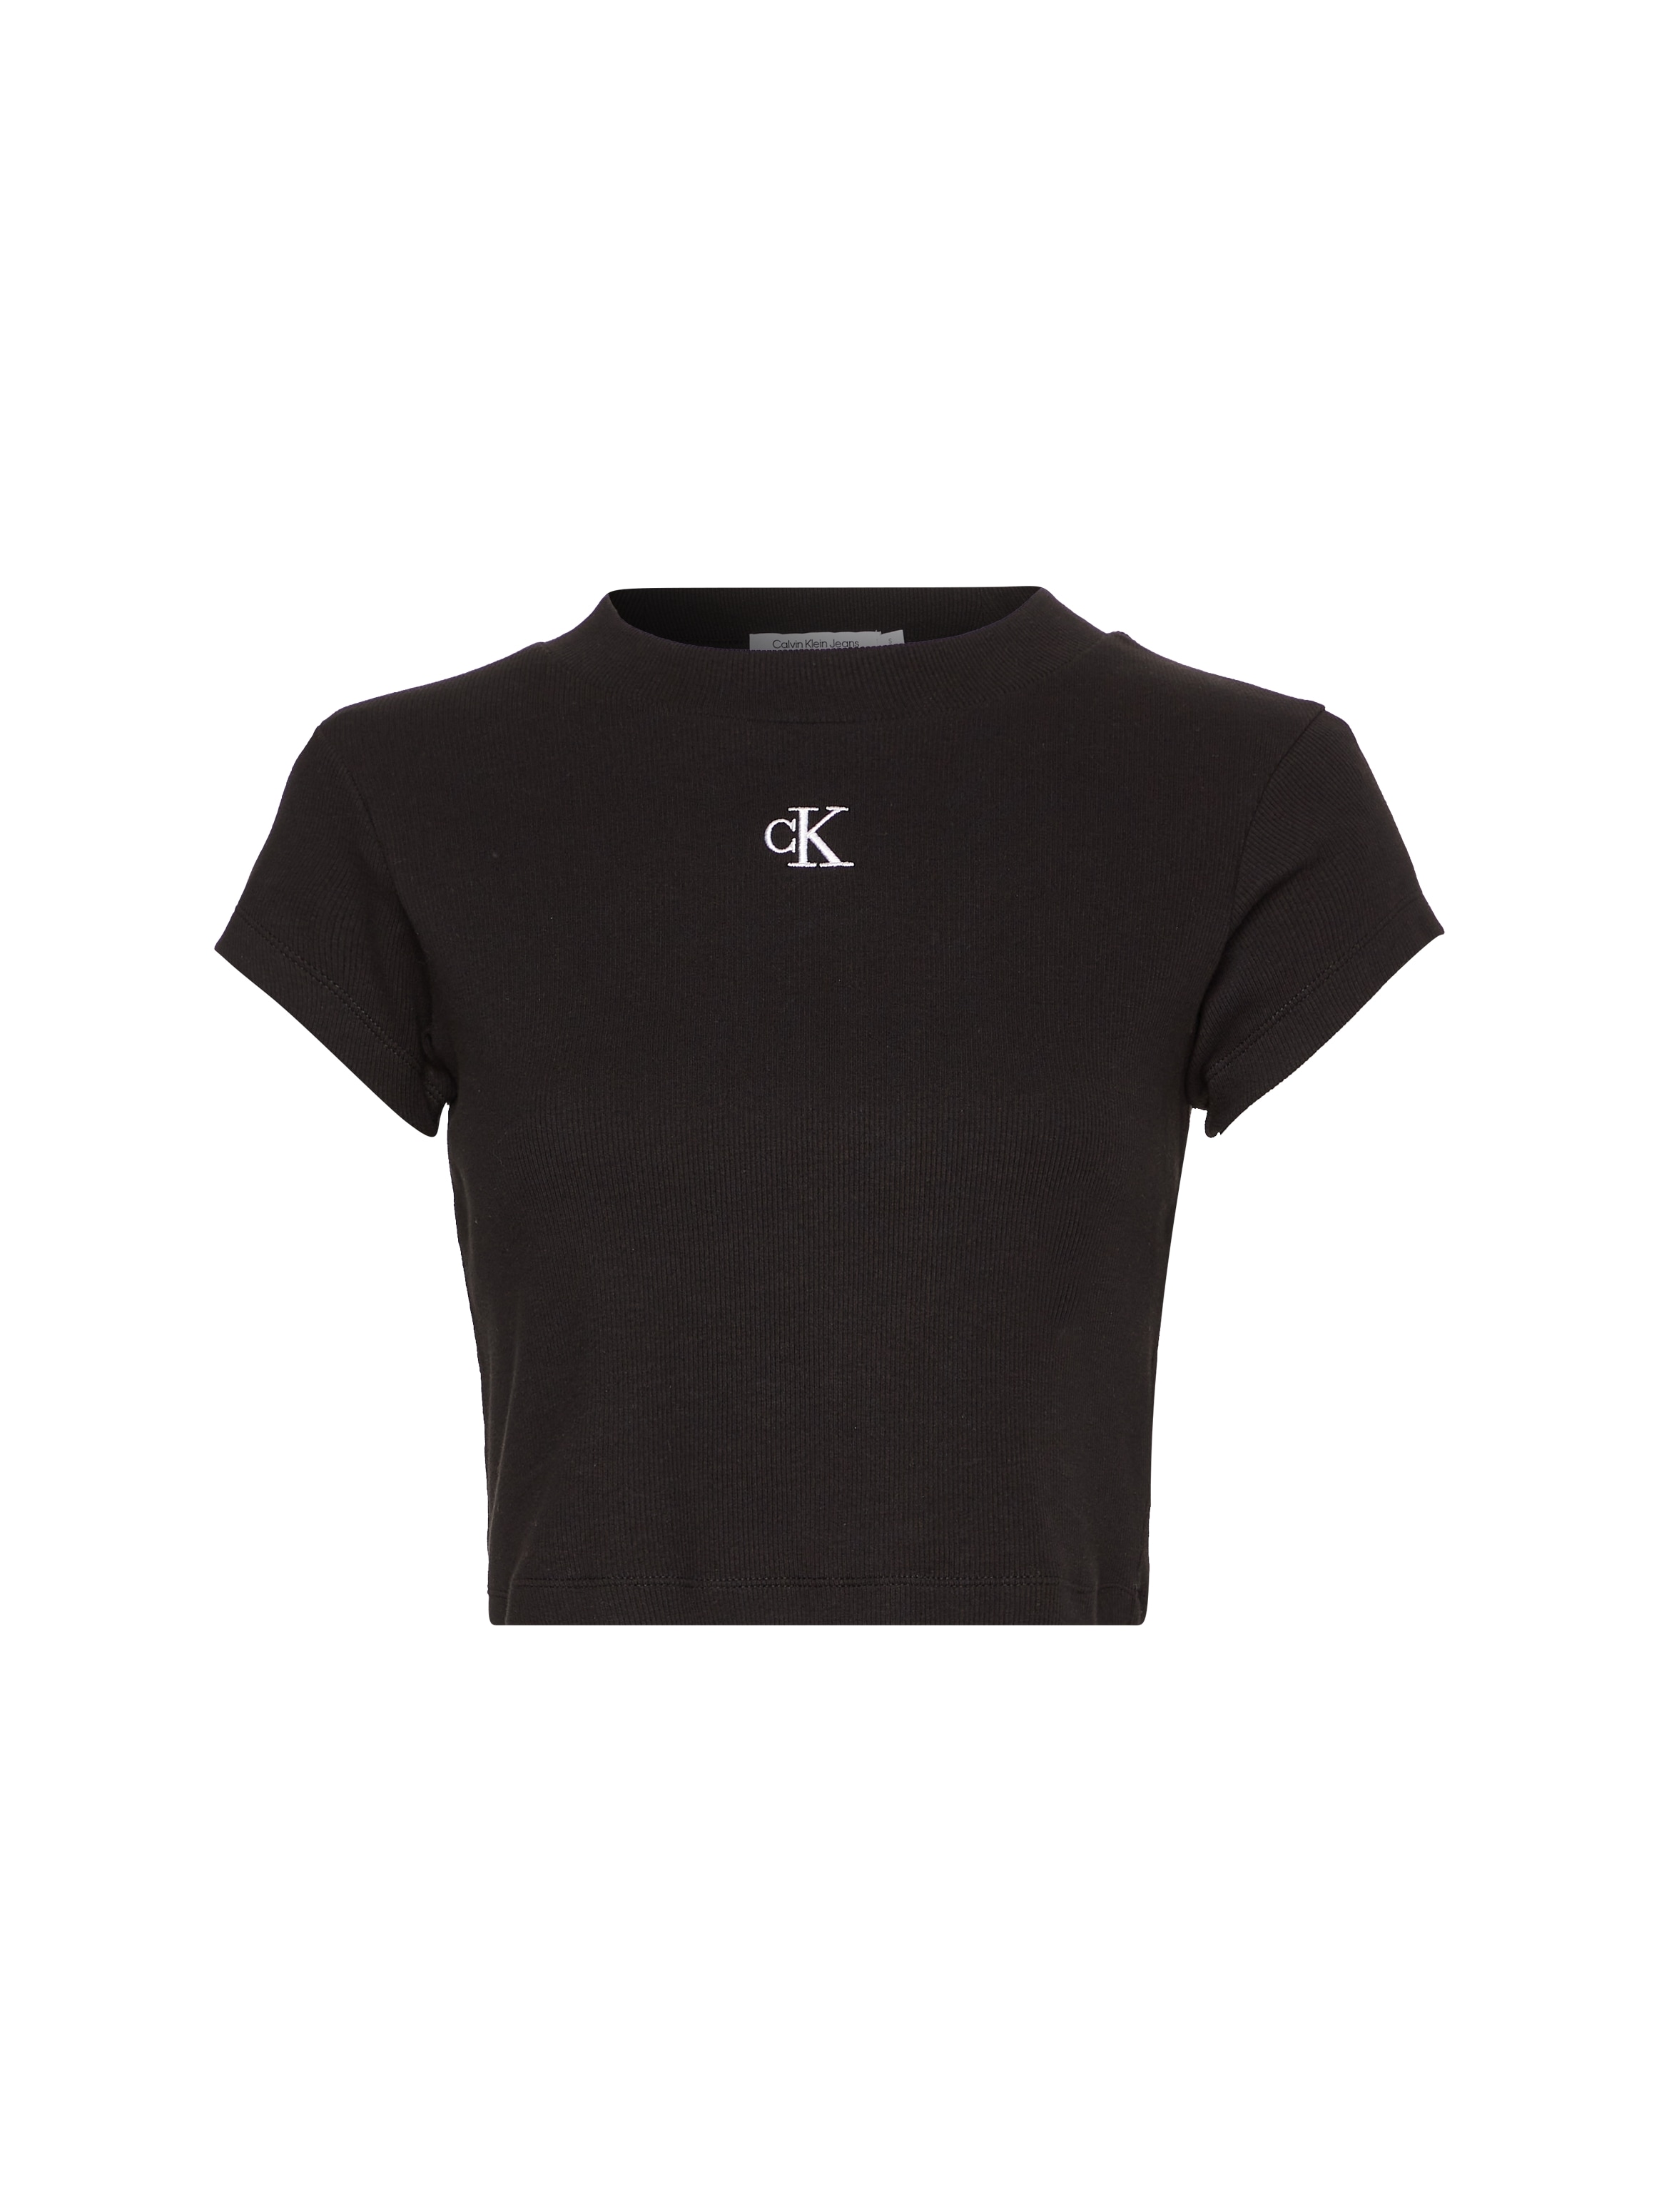 »CK BABY T-Shirt TEE« | Klein Calvin kaufen RIB Jeans BAUR